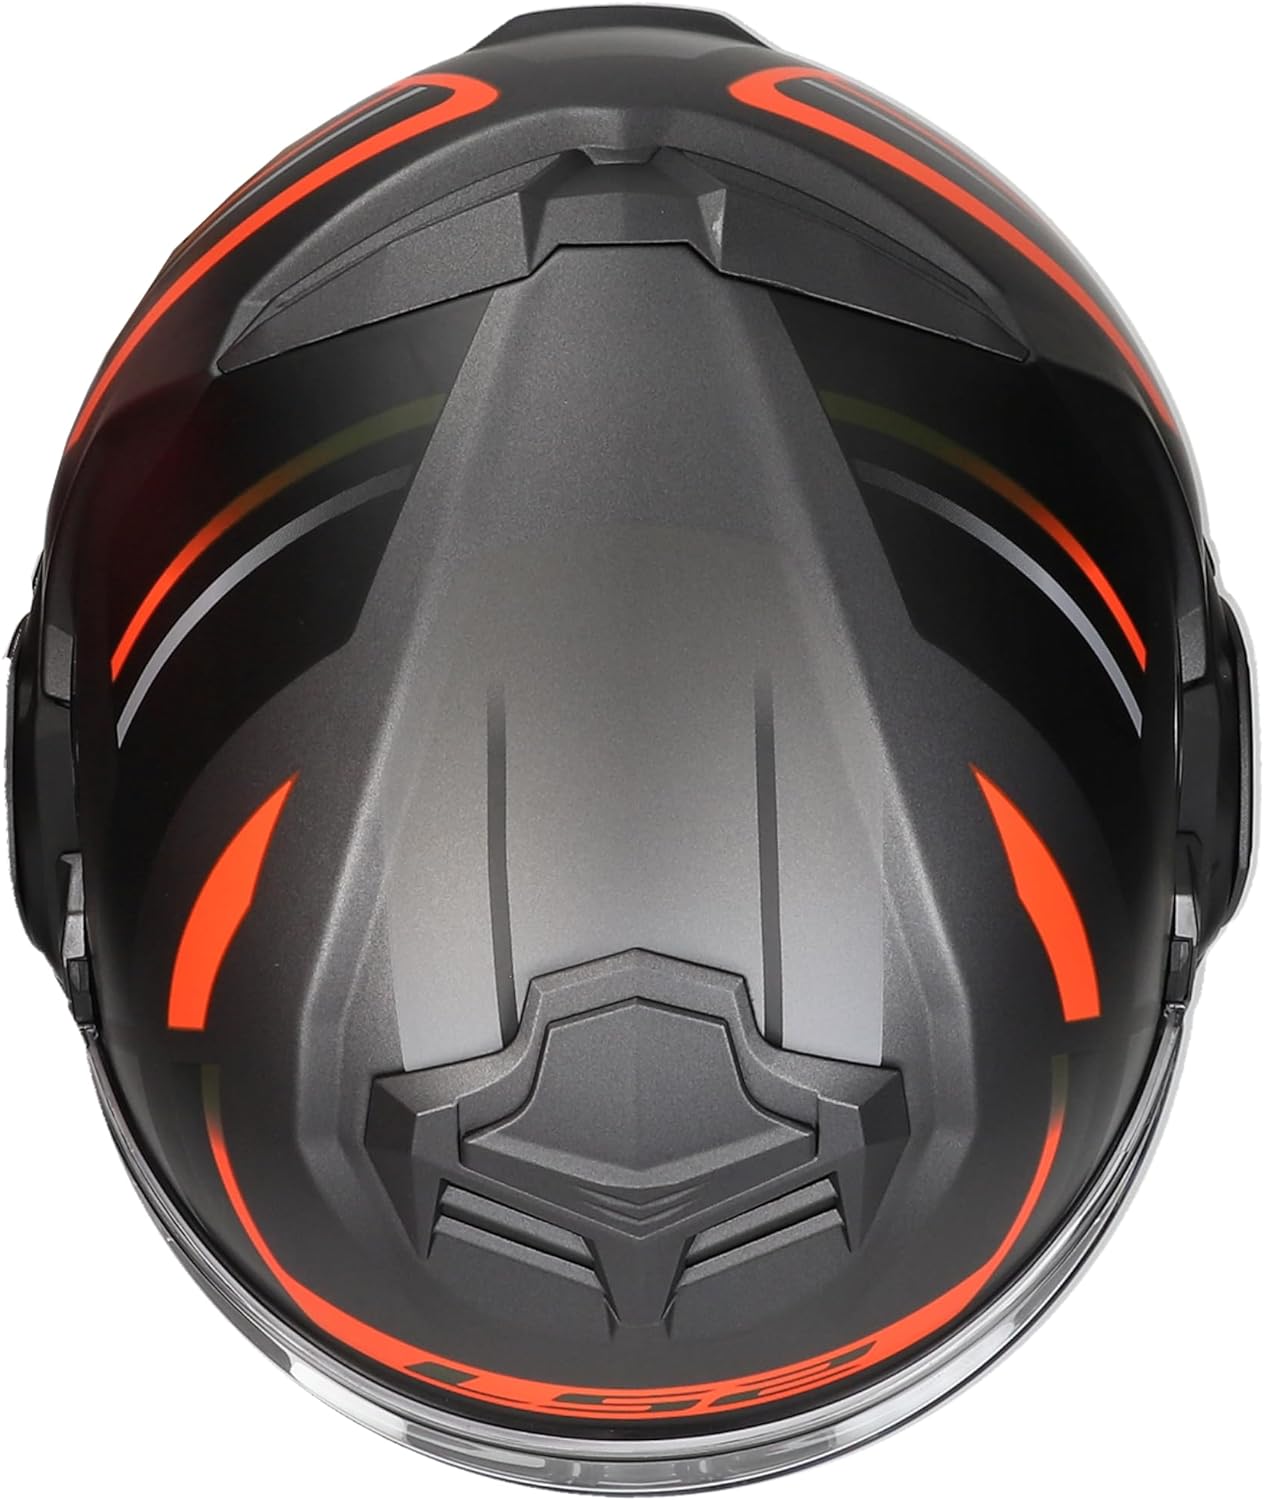 Riderwear | LS2 FF906 ADVANT KUKA Modular Helmet